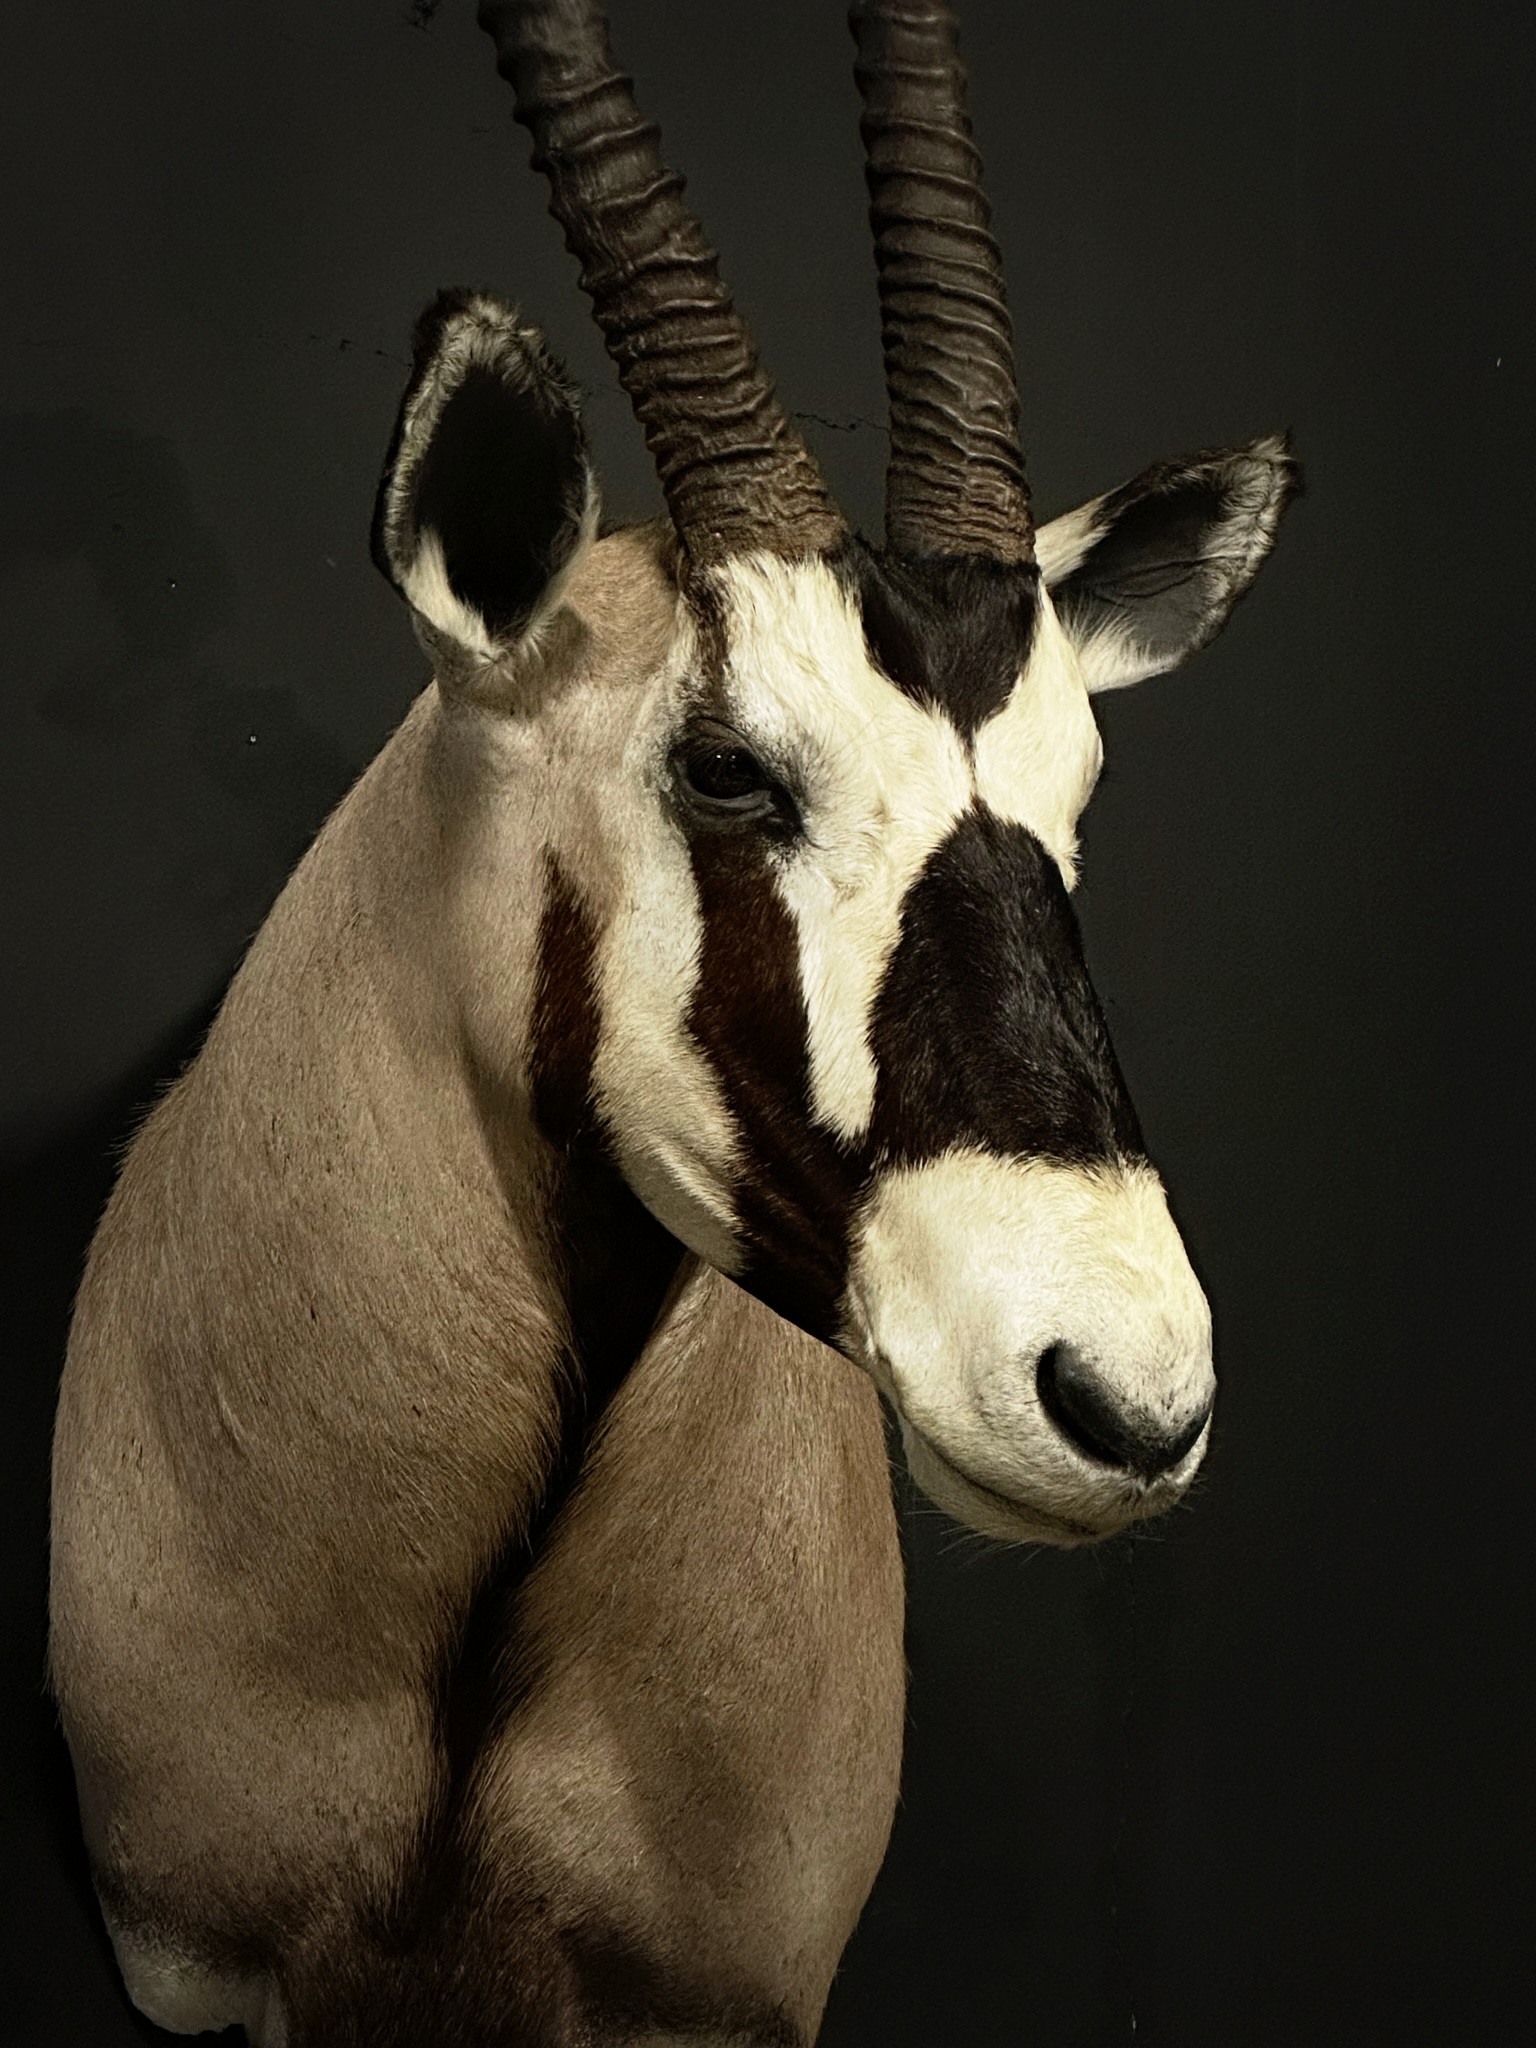 Opgezette kop van een Oryx.